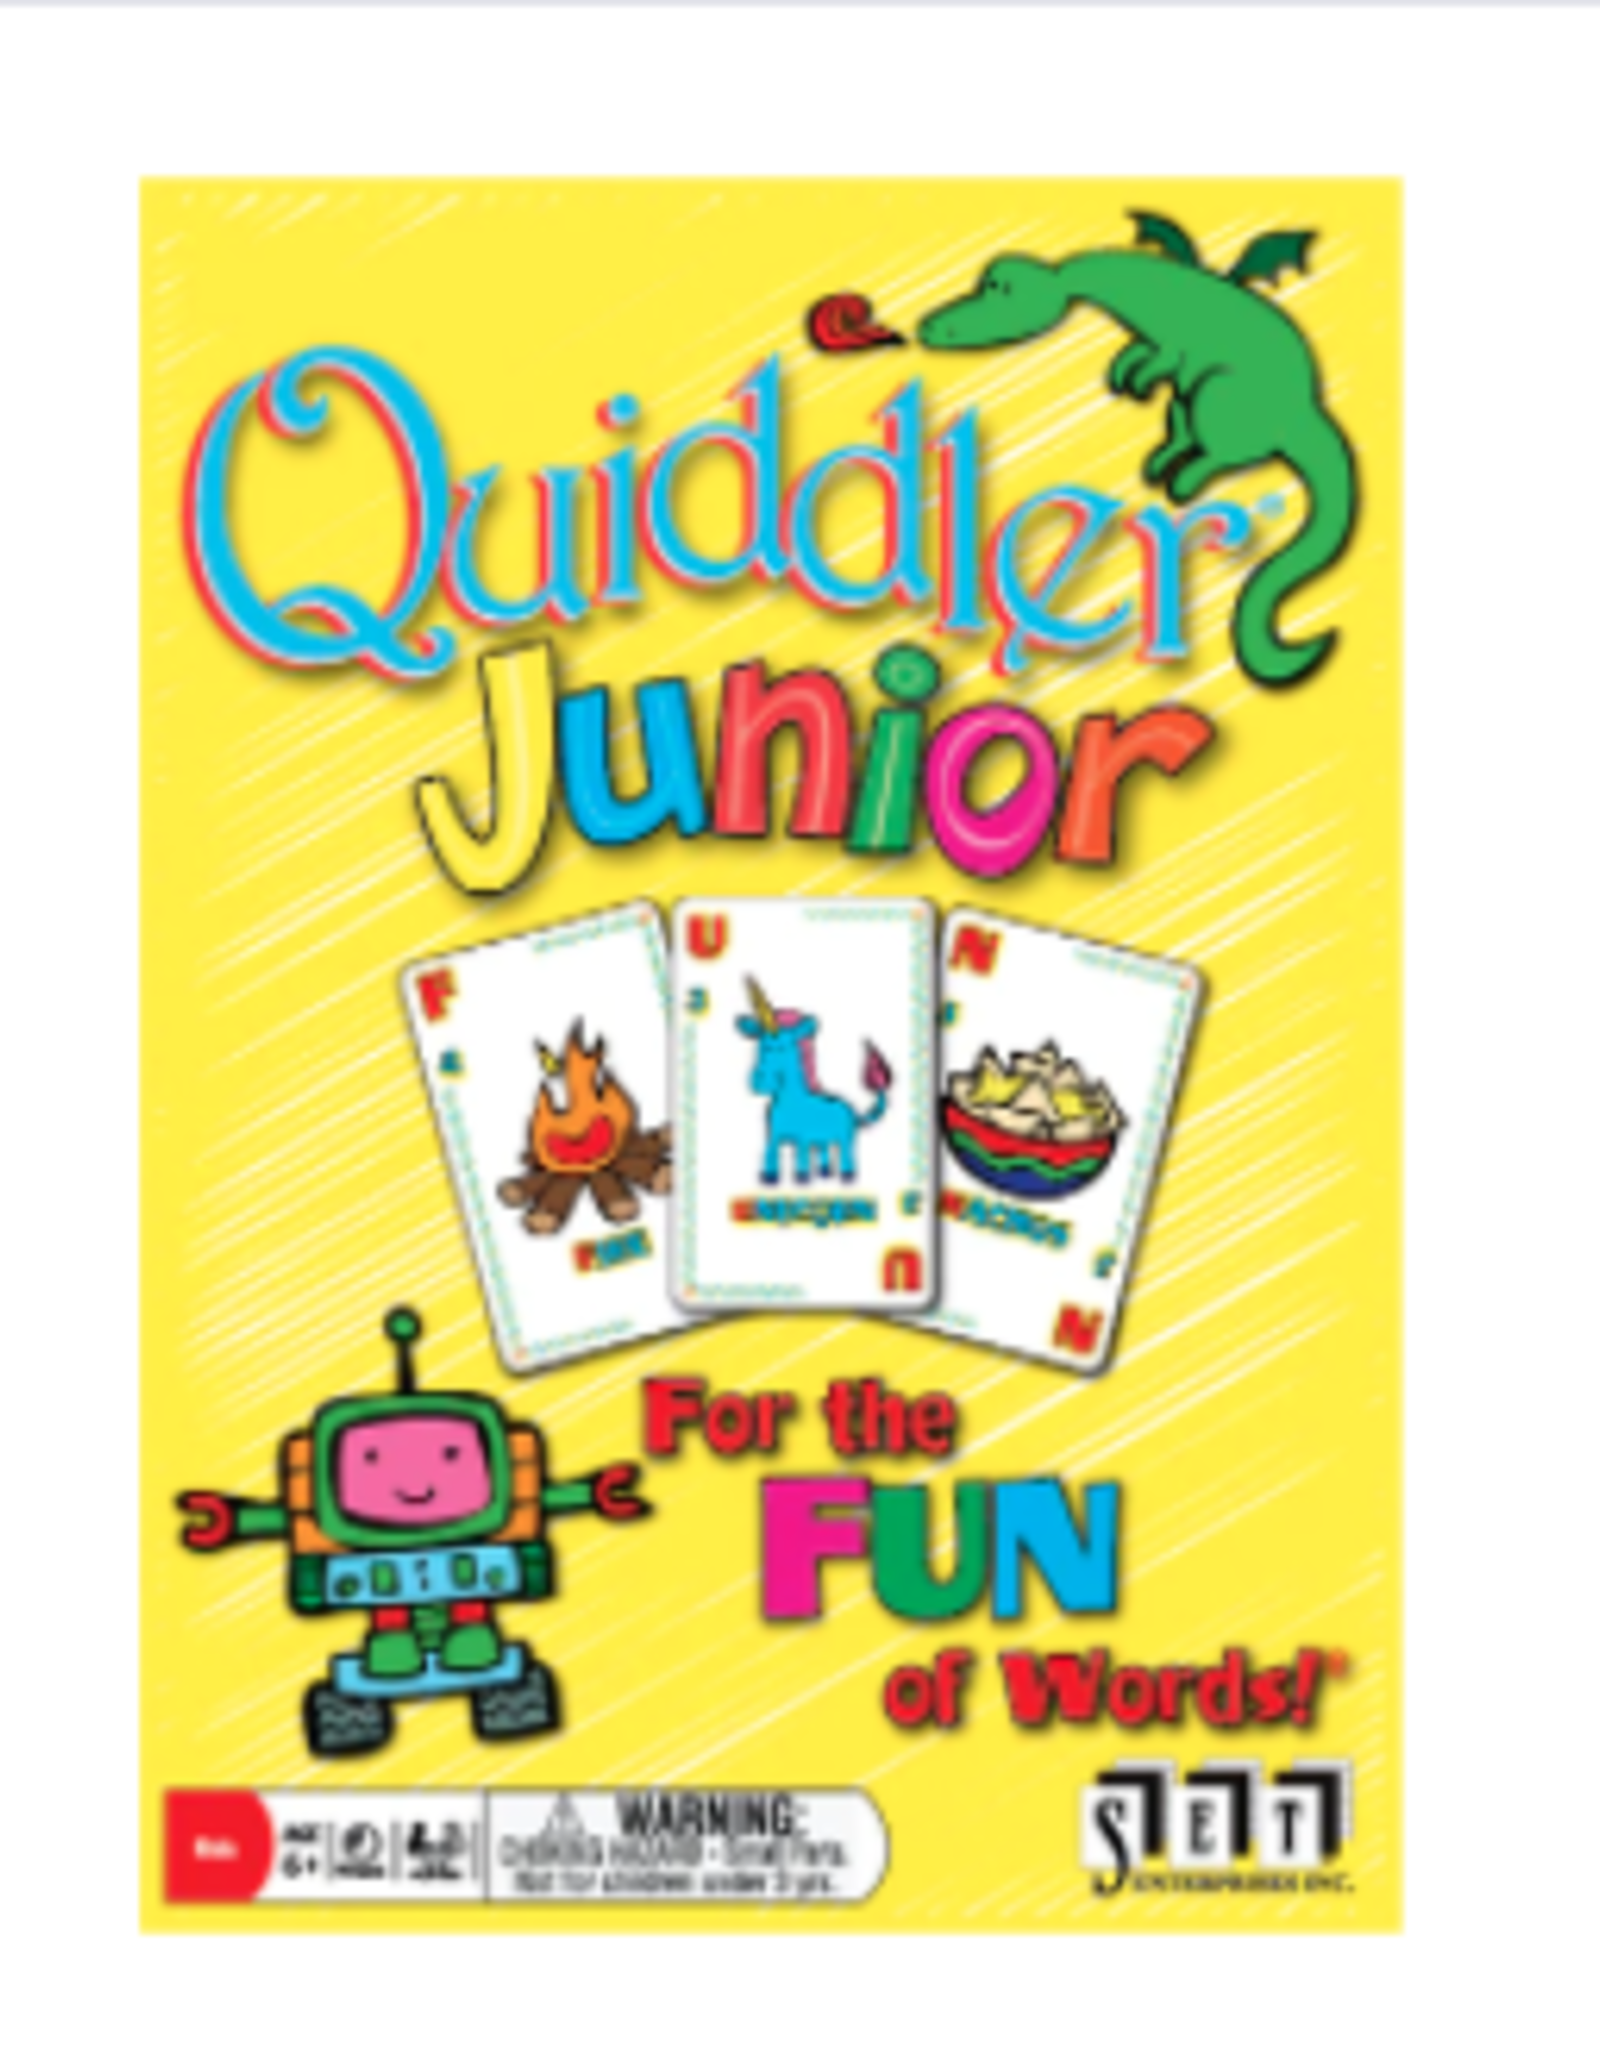 playmonster Quiddler Junior